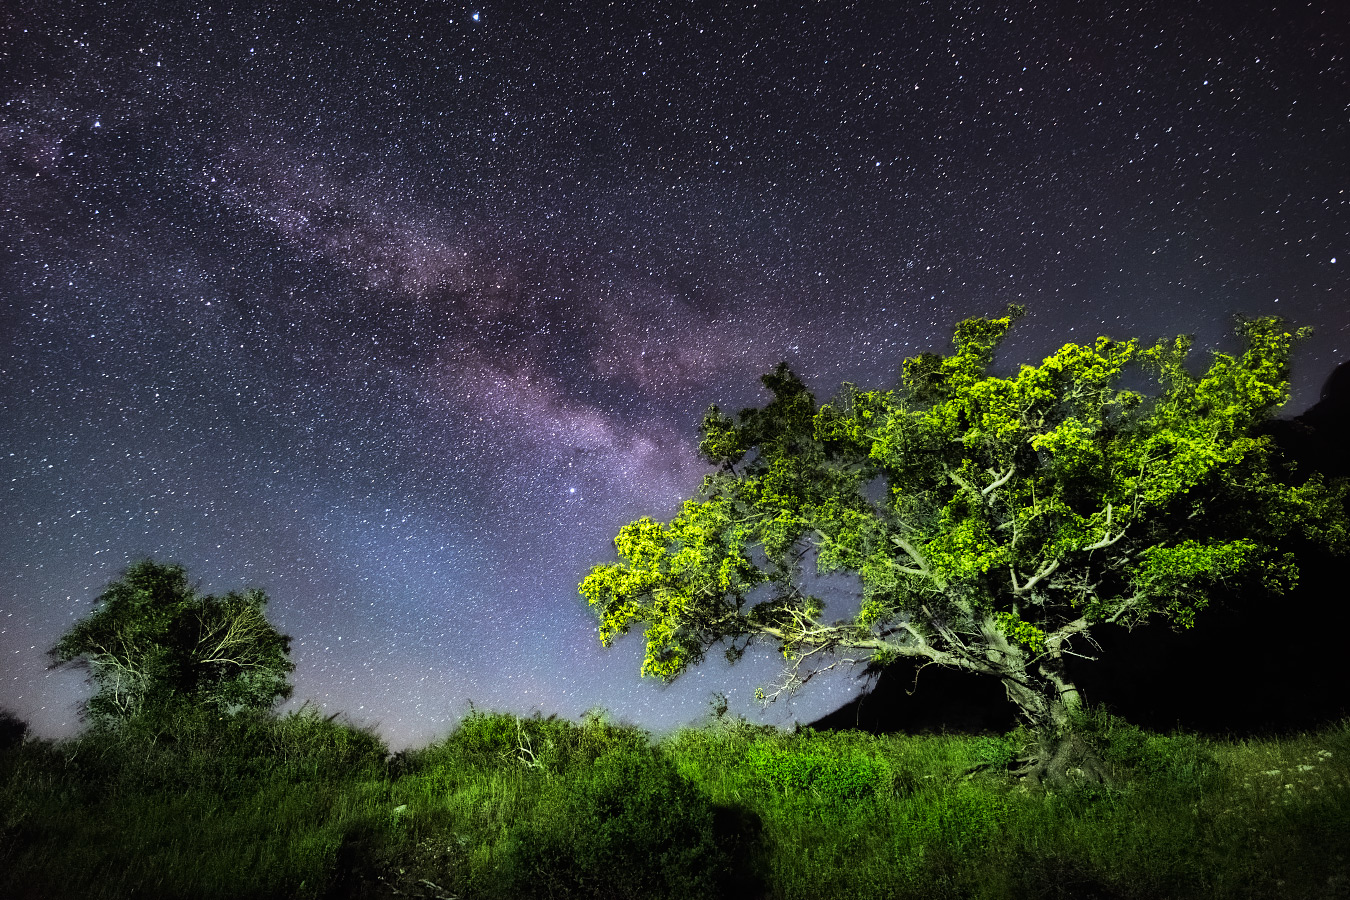 Фото ночного дерева